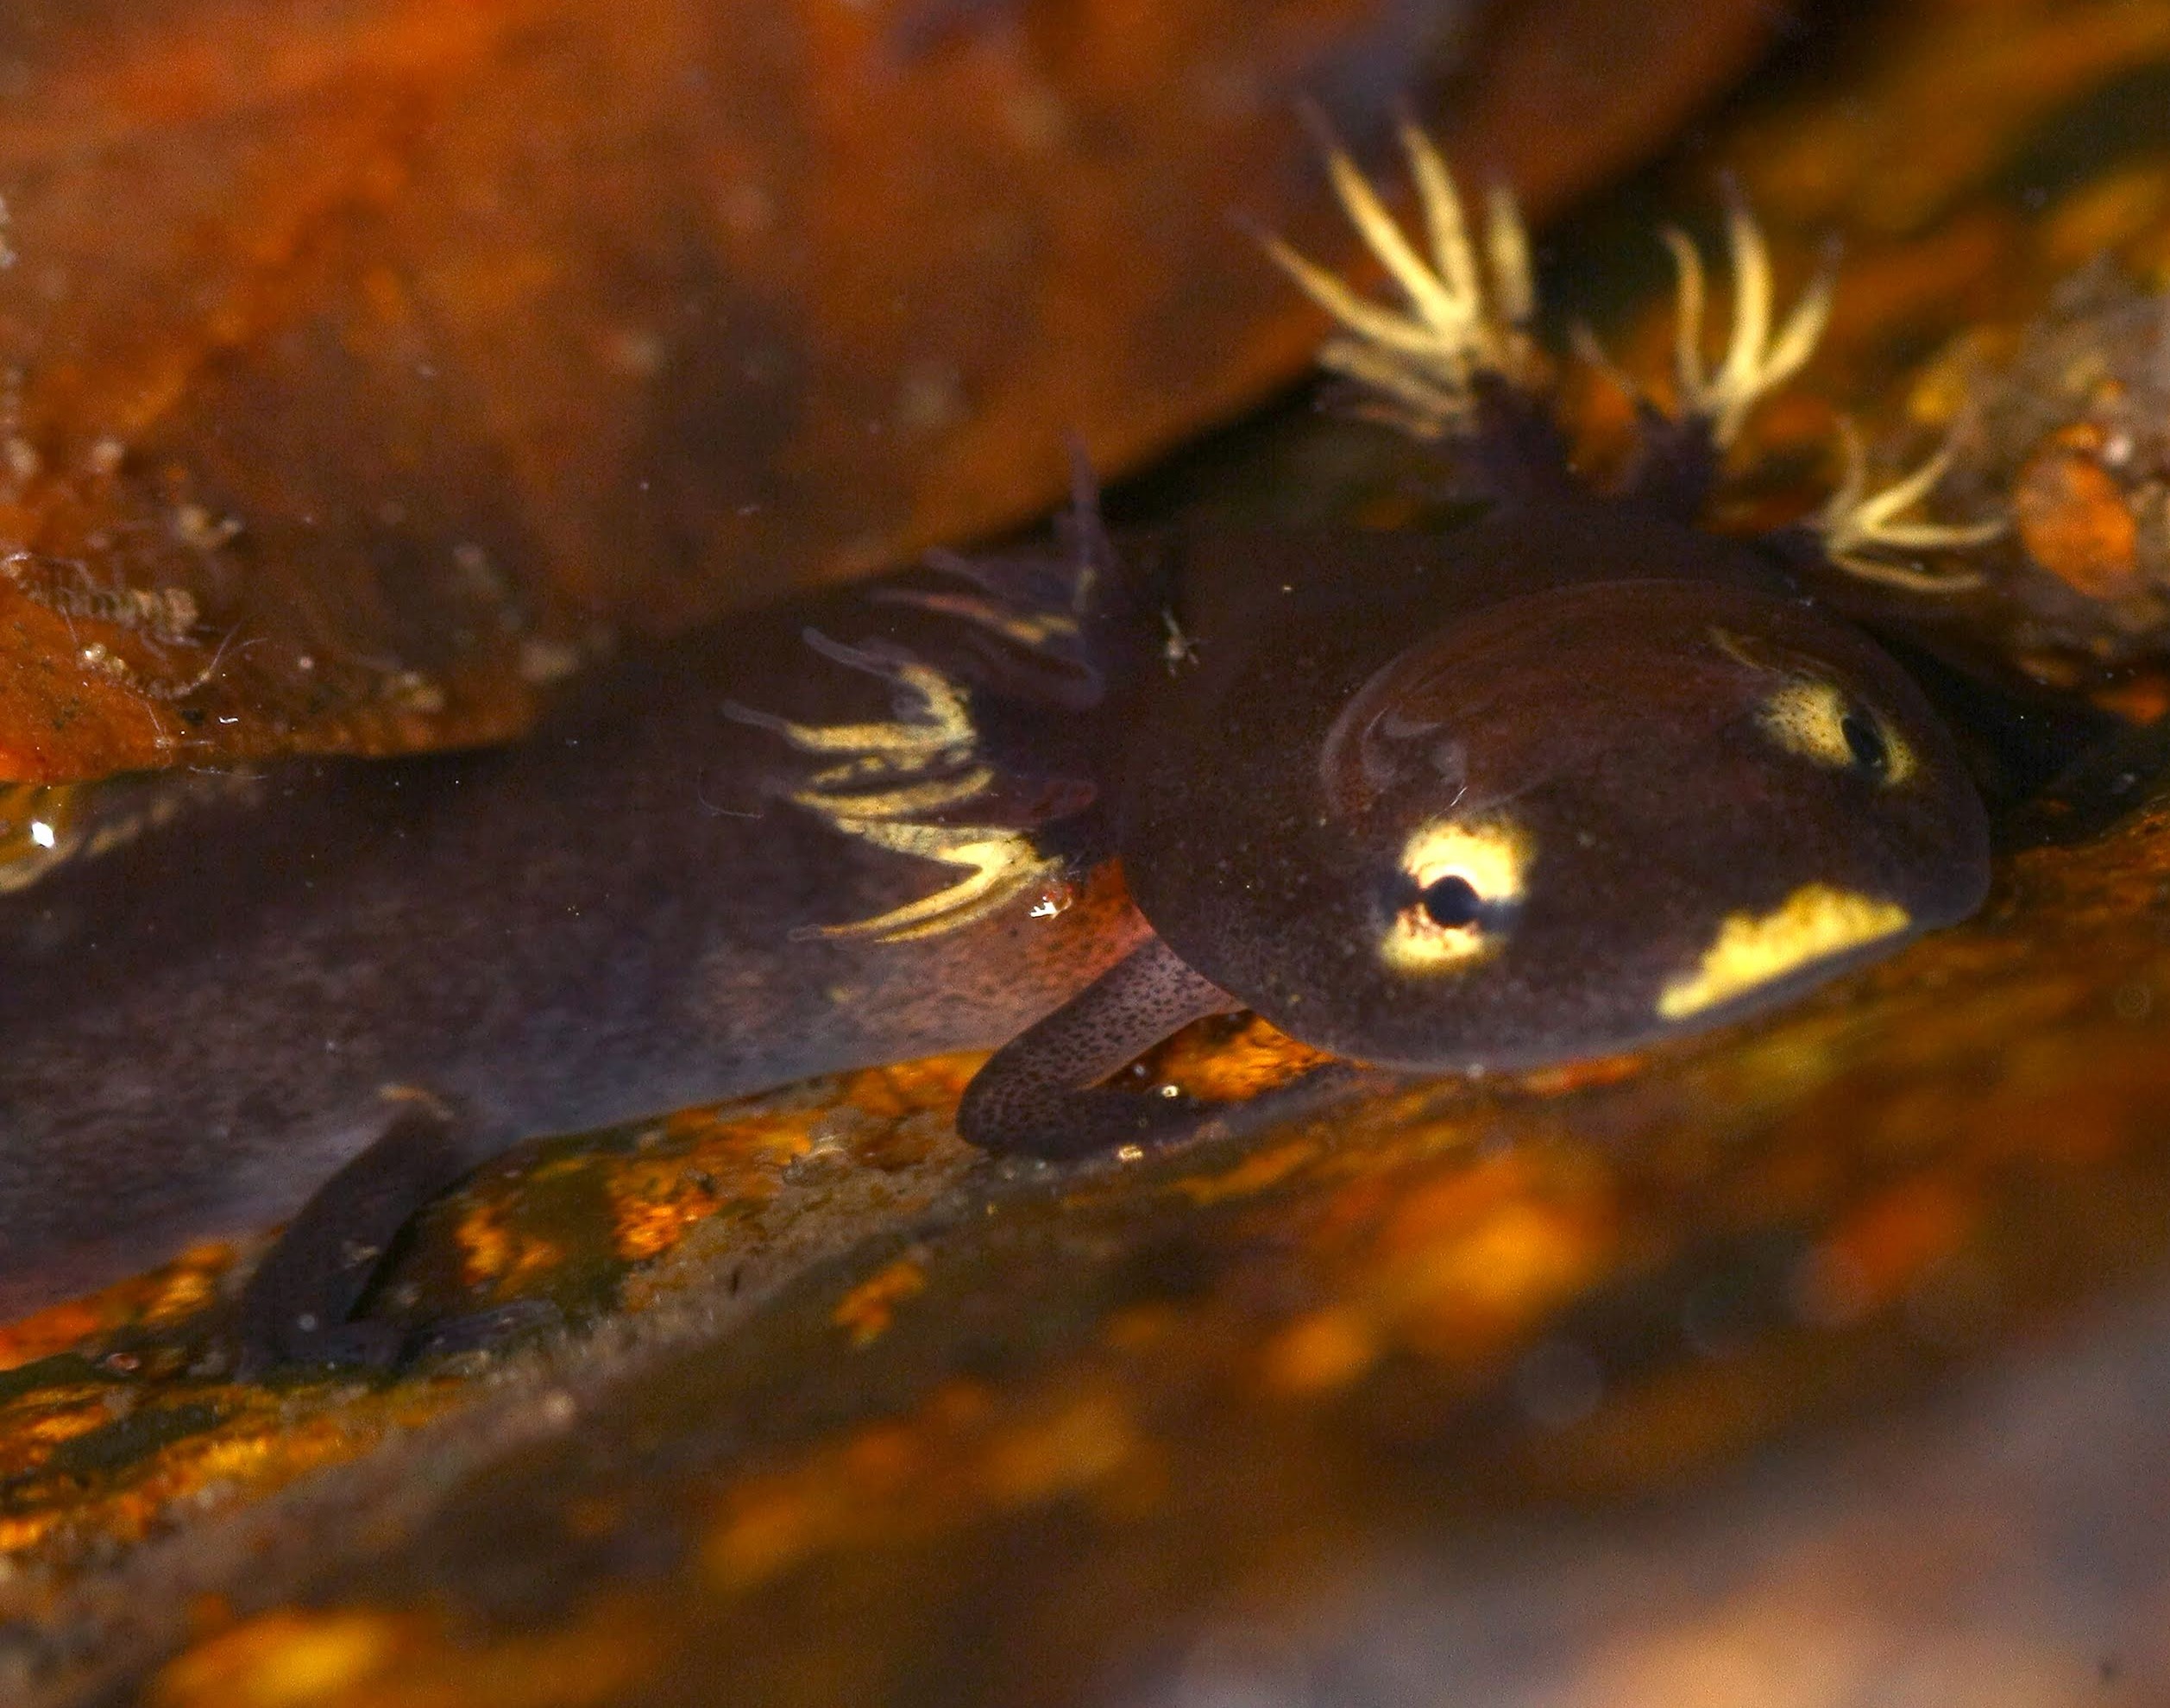 Larvae of the Hong Kong newt